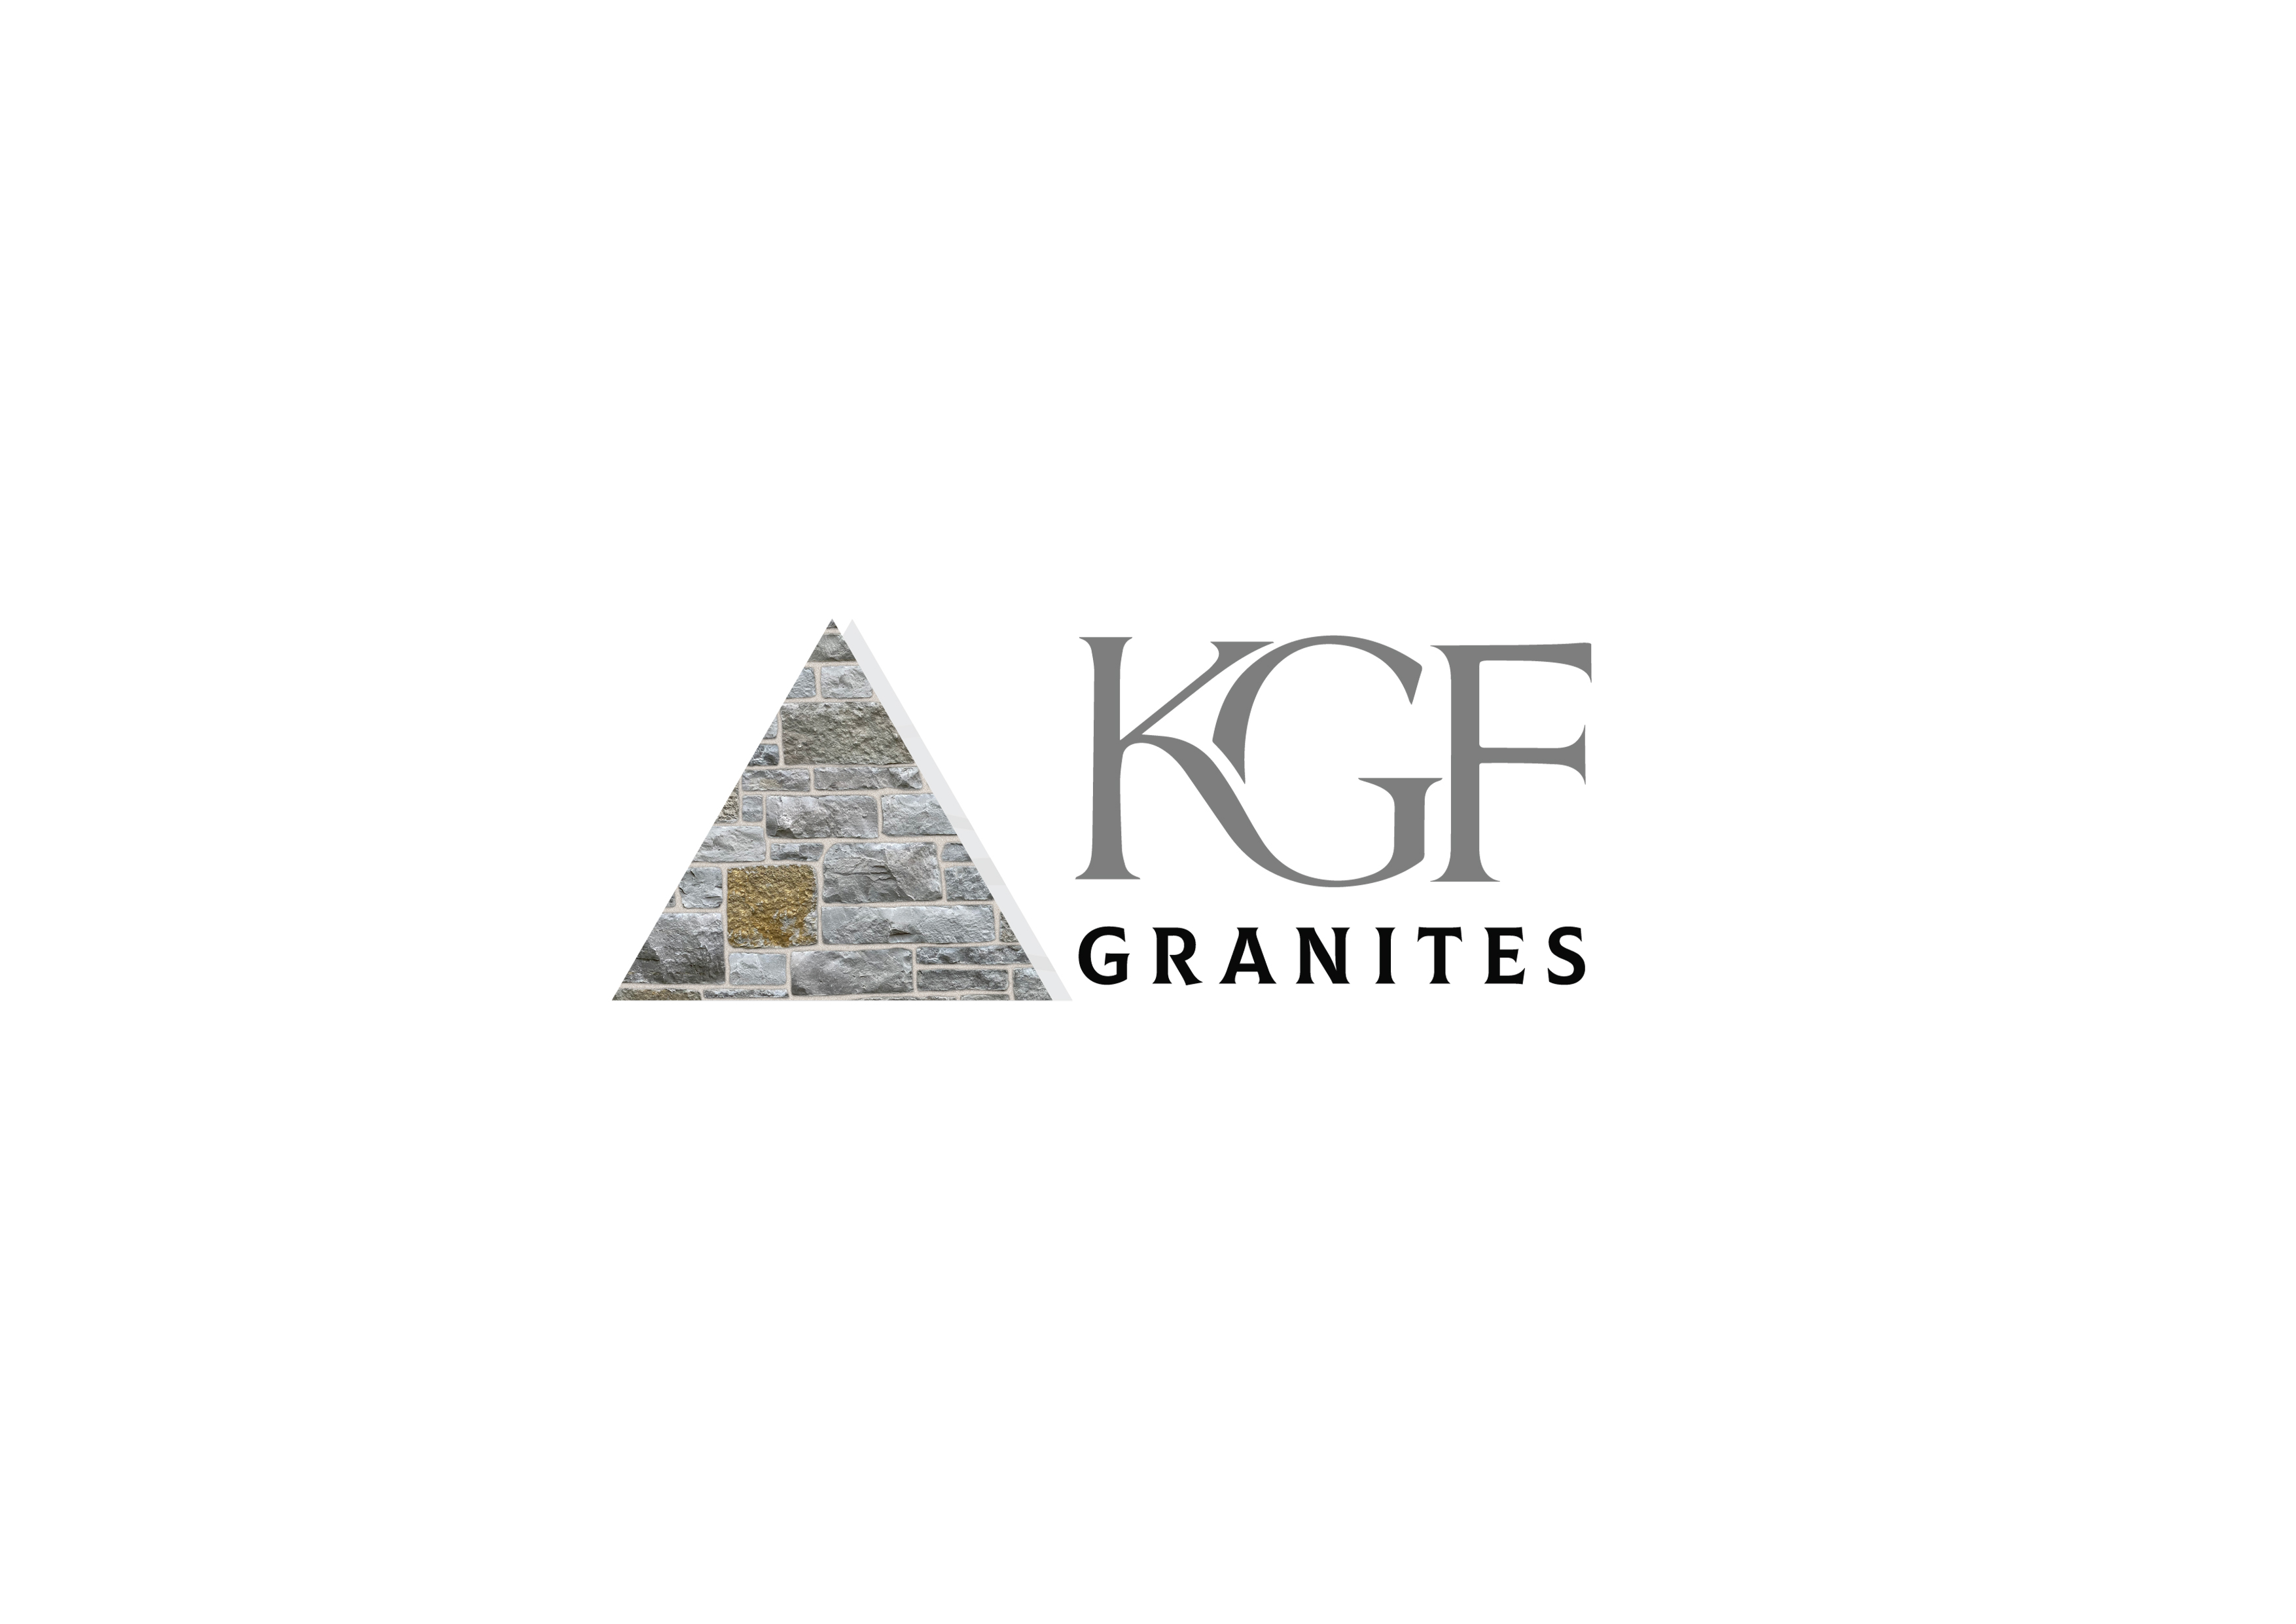 KGF Granites